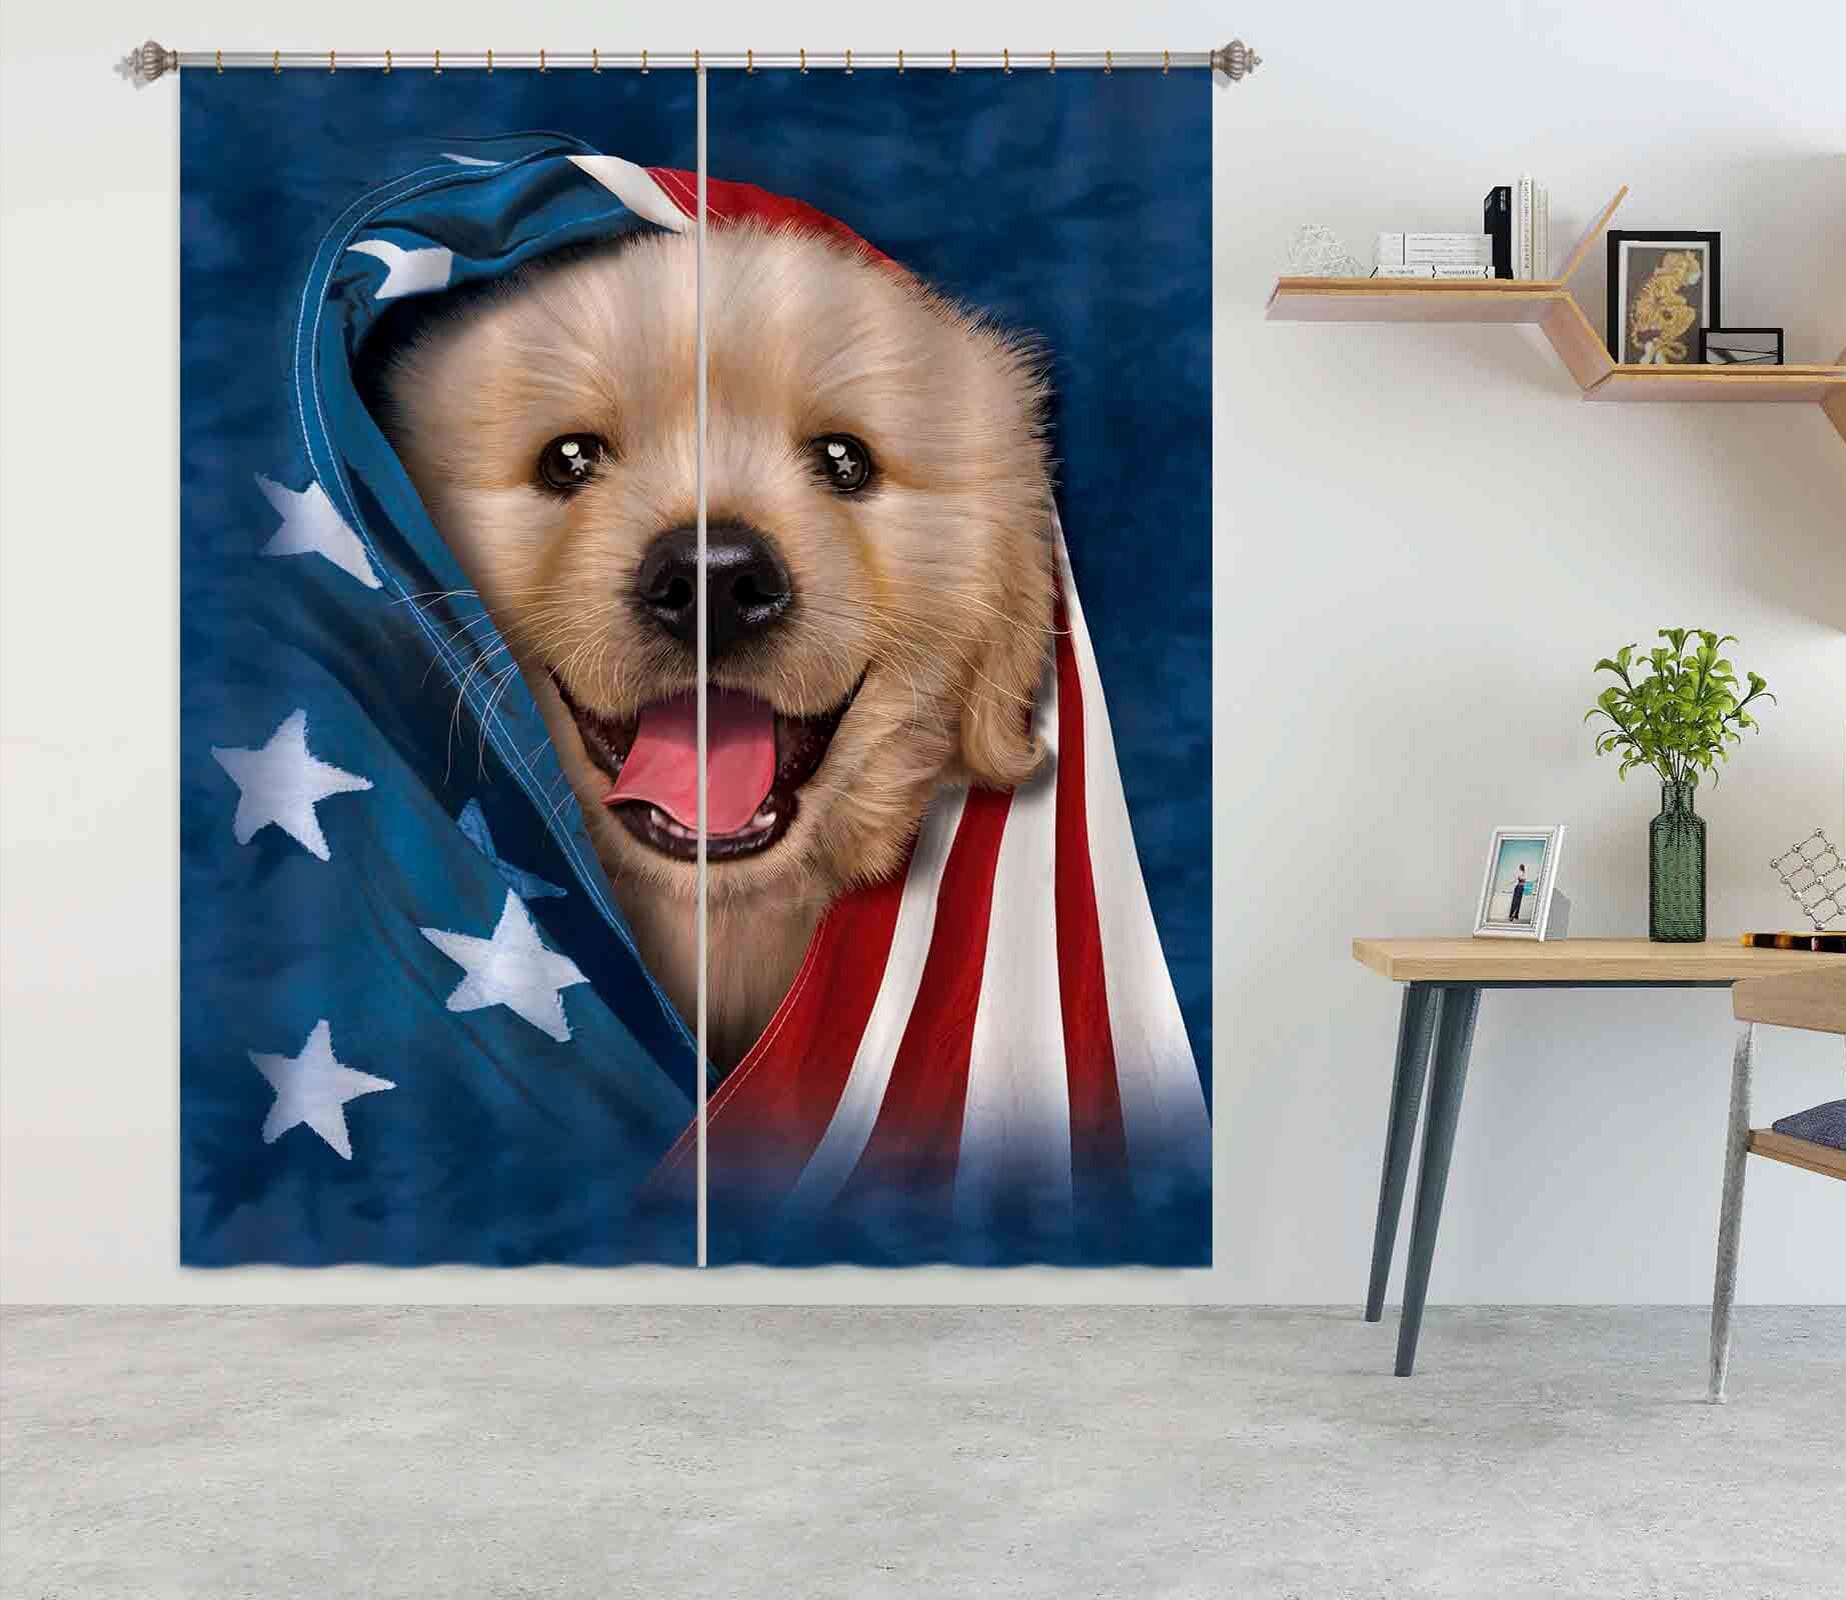 3D Cute Dog 001 Vincent Hie Curtain Curtains Drapes Curtains AJ Creativity Home 